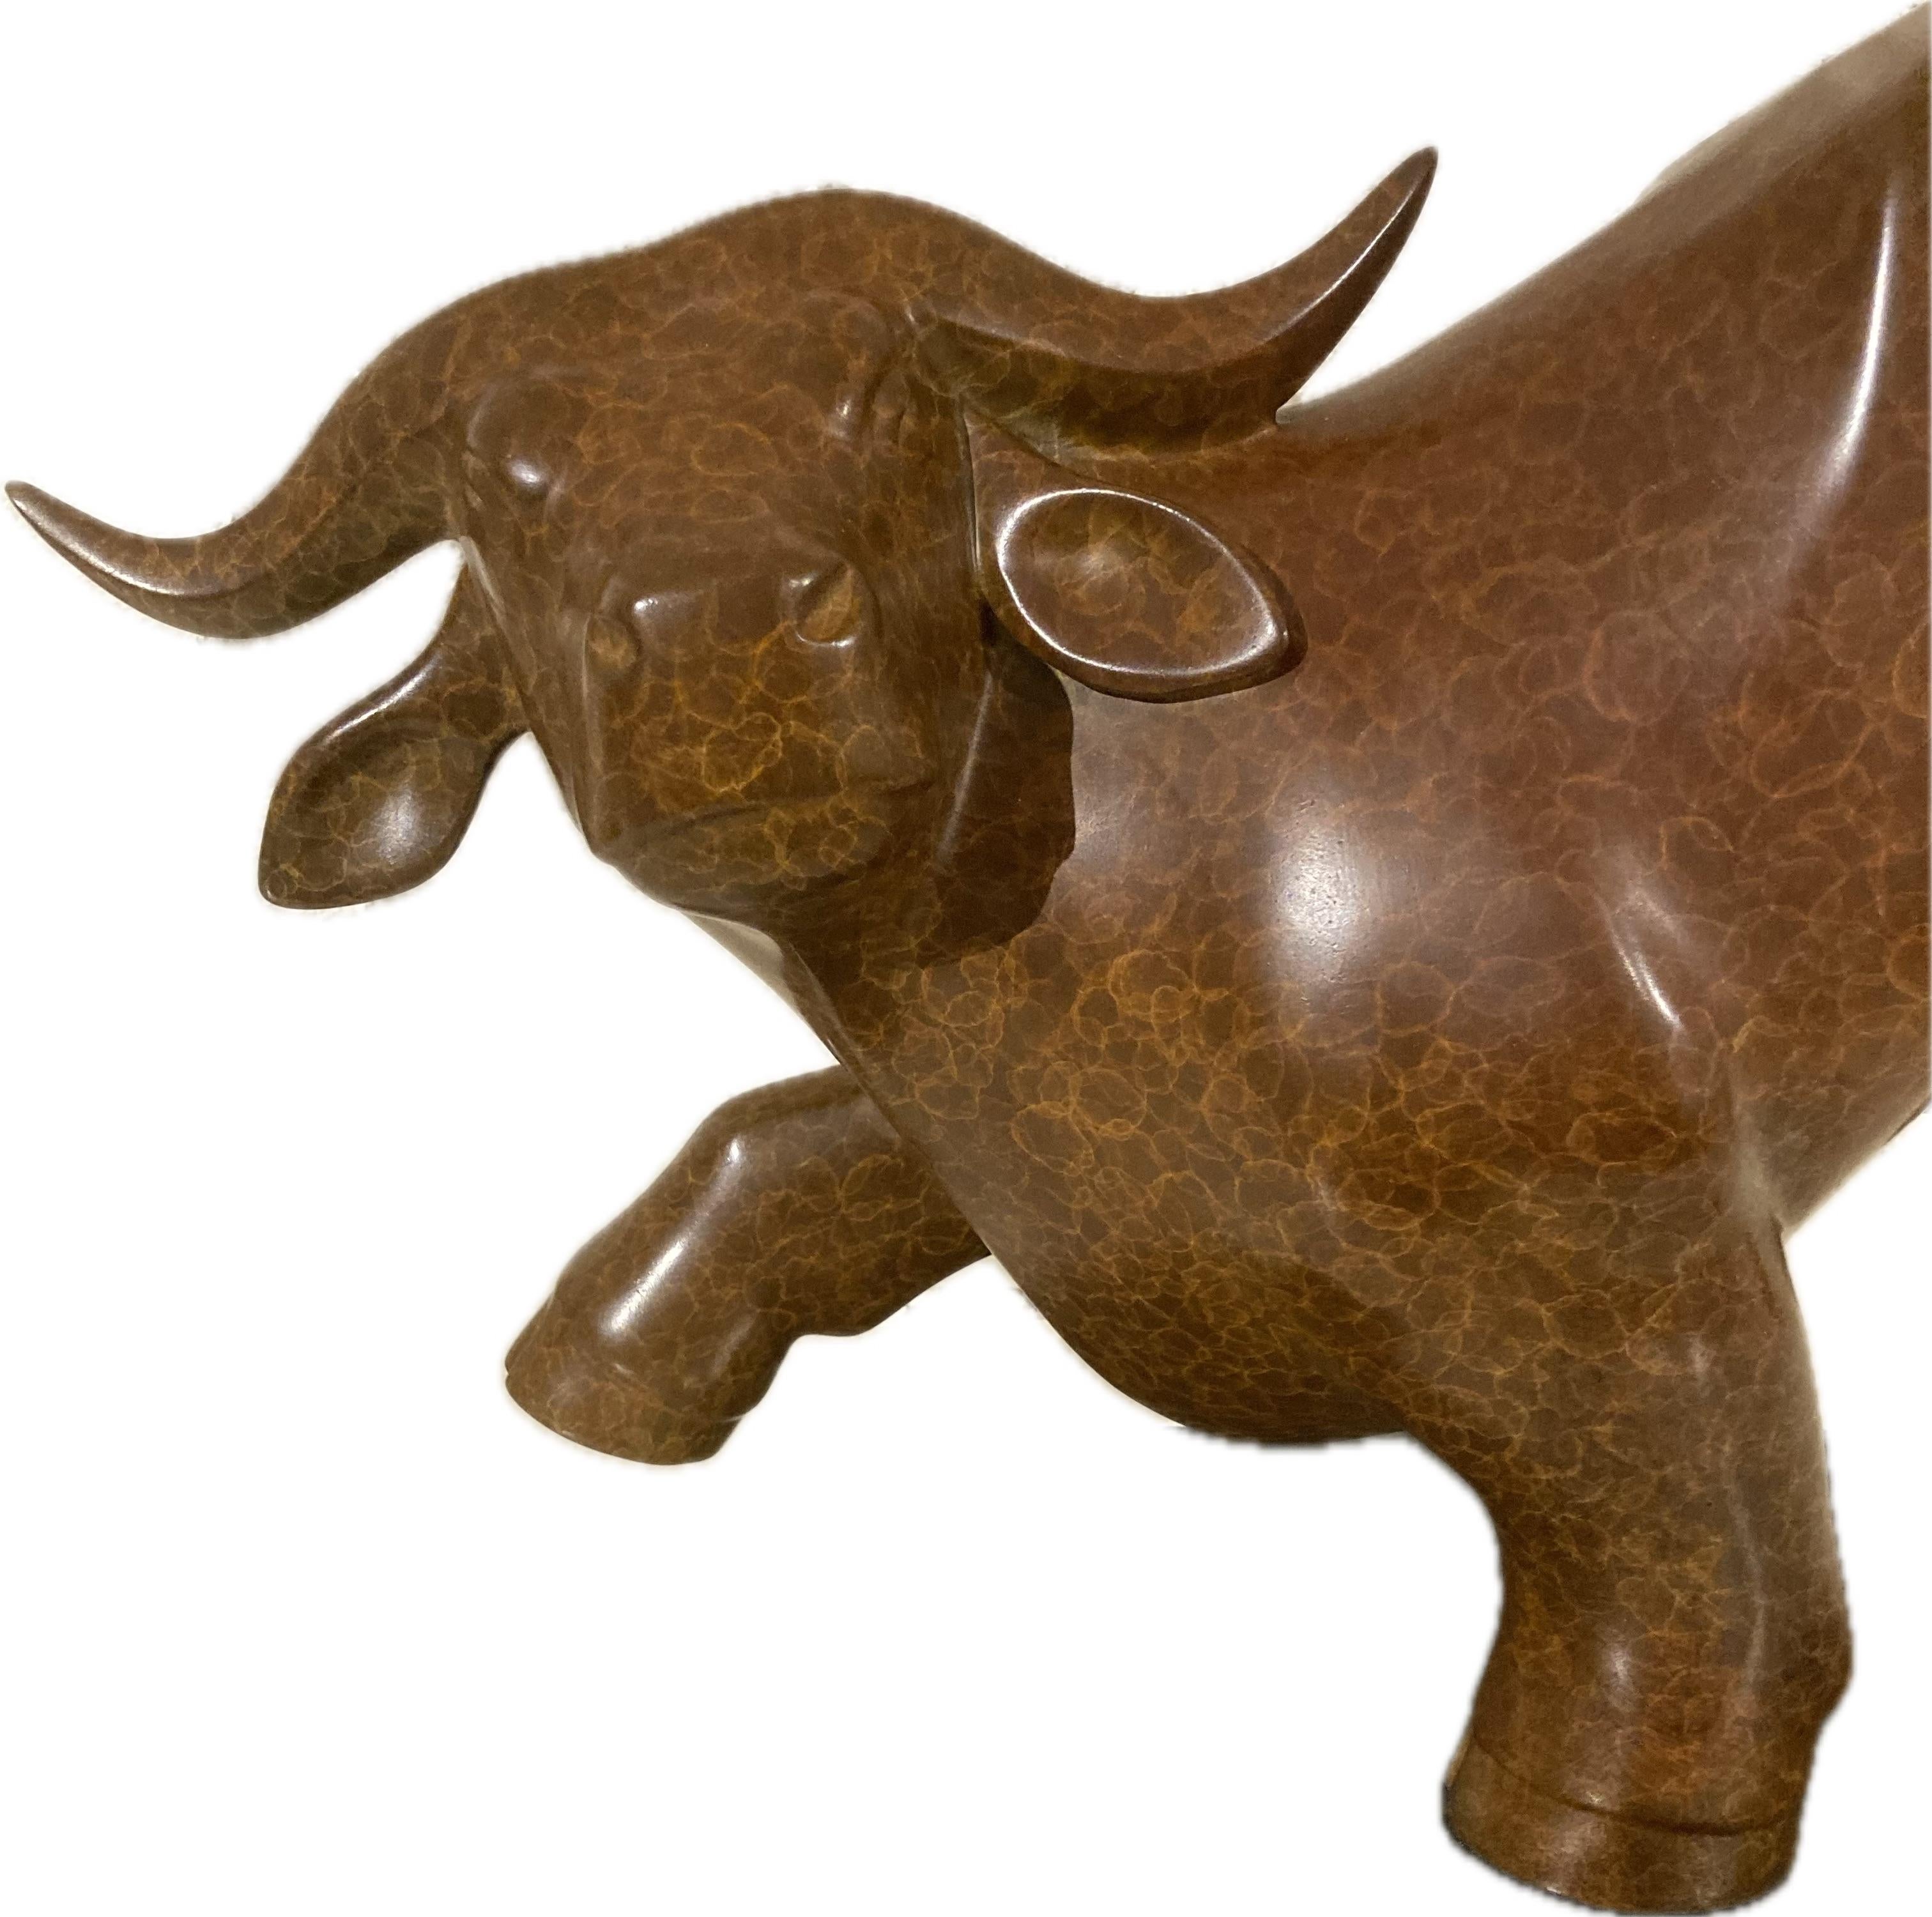 Lentestier no. 2 Spring Bull Bronze Sculpture Animal Contemporary 
Evert den Hartog (né à Groot-Ammers, aux Pays-Bas, en 1949) a suivi une formation de sculpteur à l'Académie des arts visuels de Rotterdam. Dans les années 1971-1976, ses professeurs